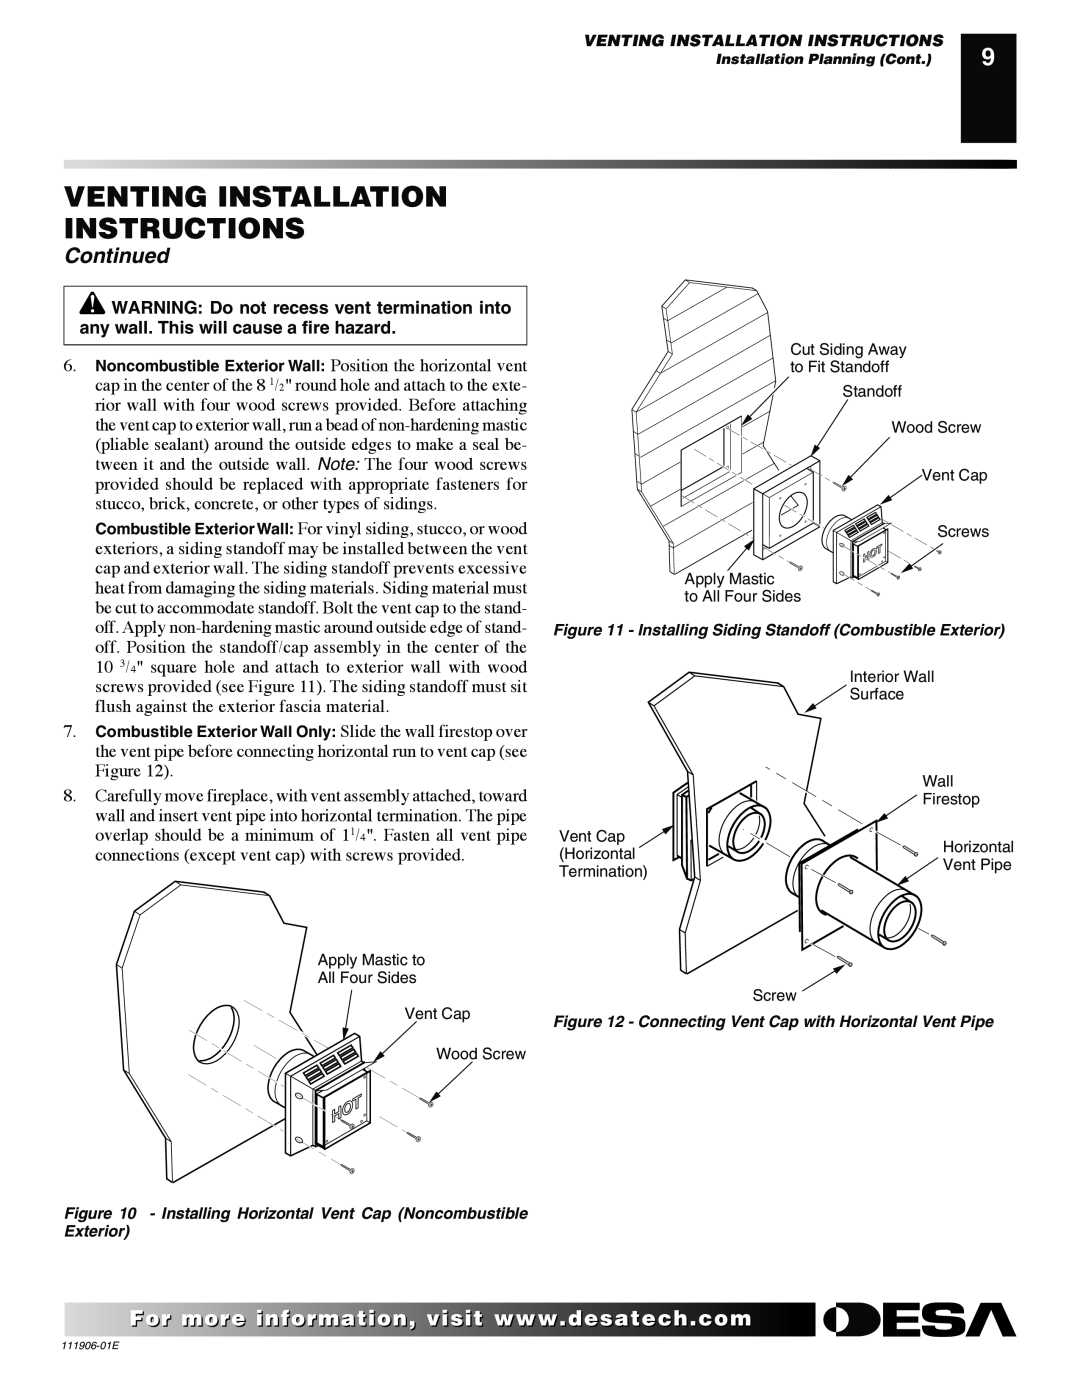 Desa VV42PB(1) Venting Installation Instructions, Continued, Installing Horizontal Vent Cap Noncombustible Exterior 